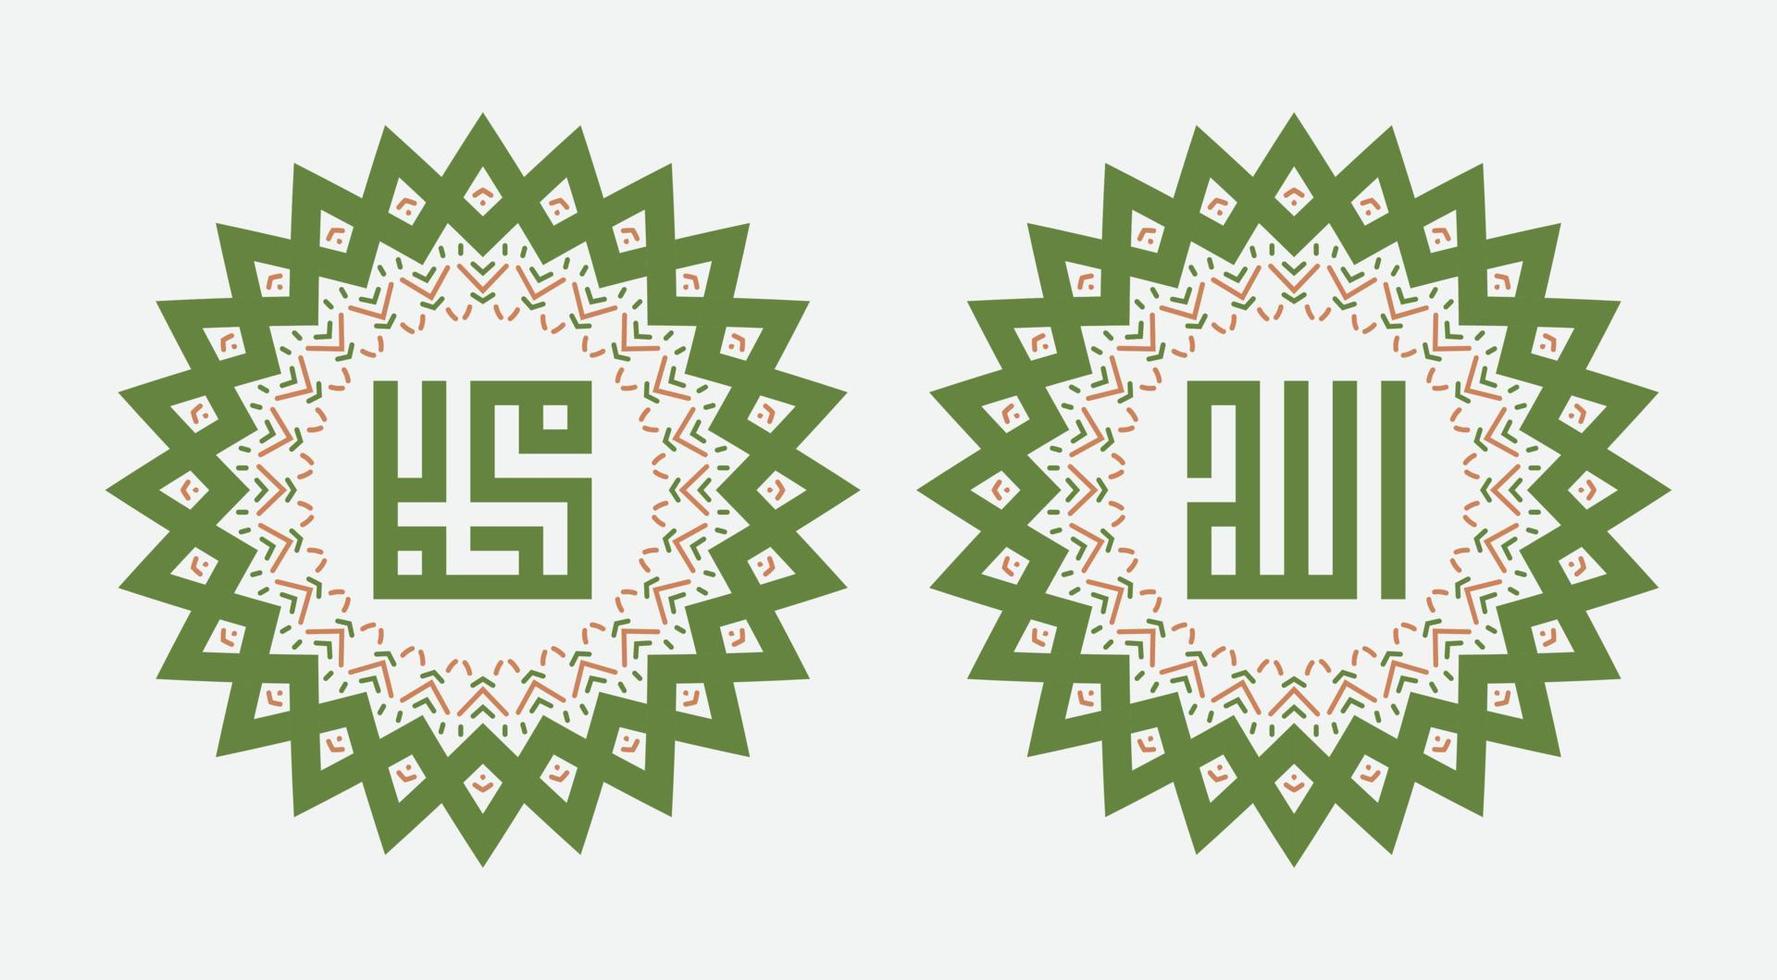 kalligrafie van allah en profeet mohammed. ornament op witte achtergrond vector